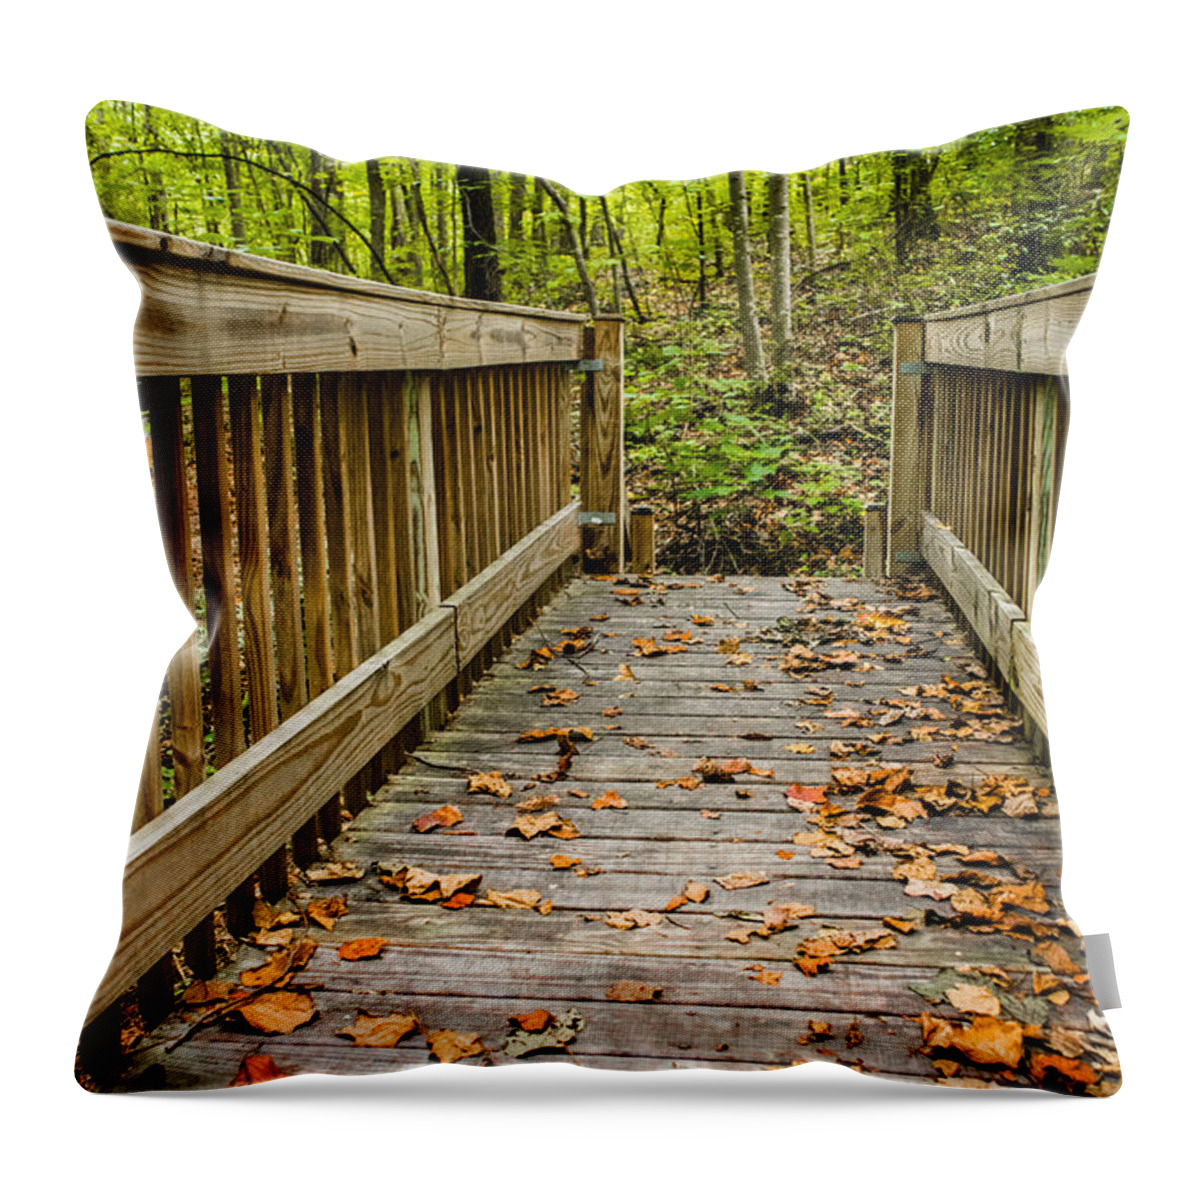 Autumn On The Bridge Throw Pillow featuring the photograph Autumn on the Bridge by Parker Cunningham